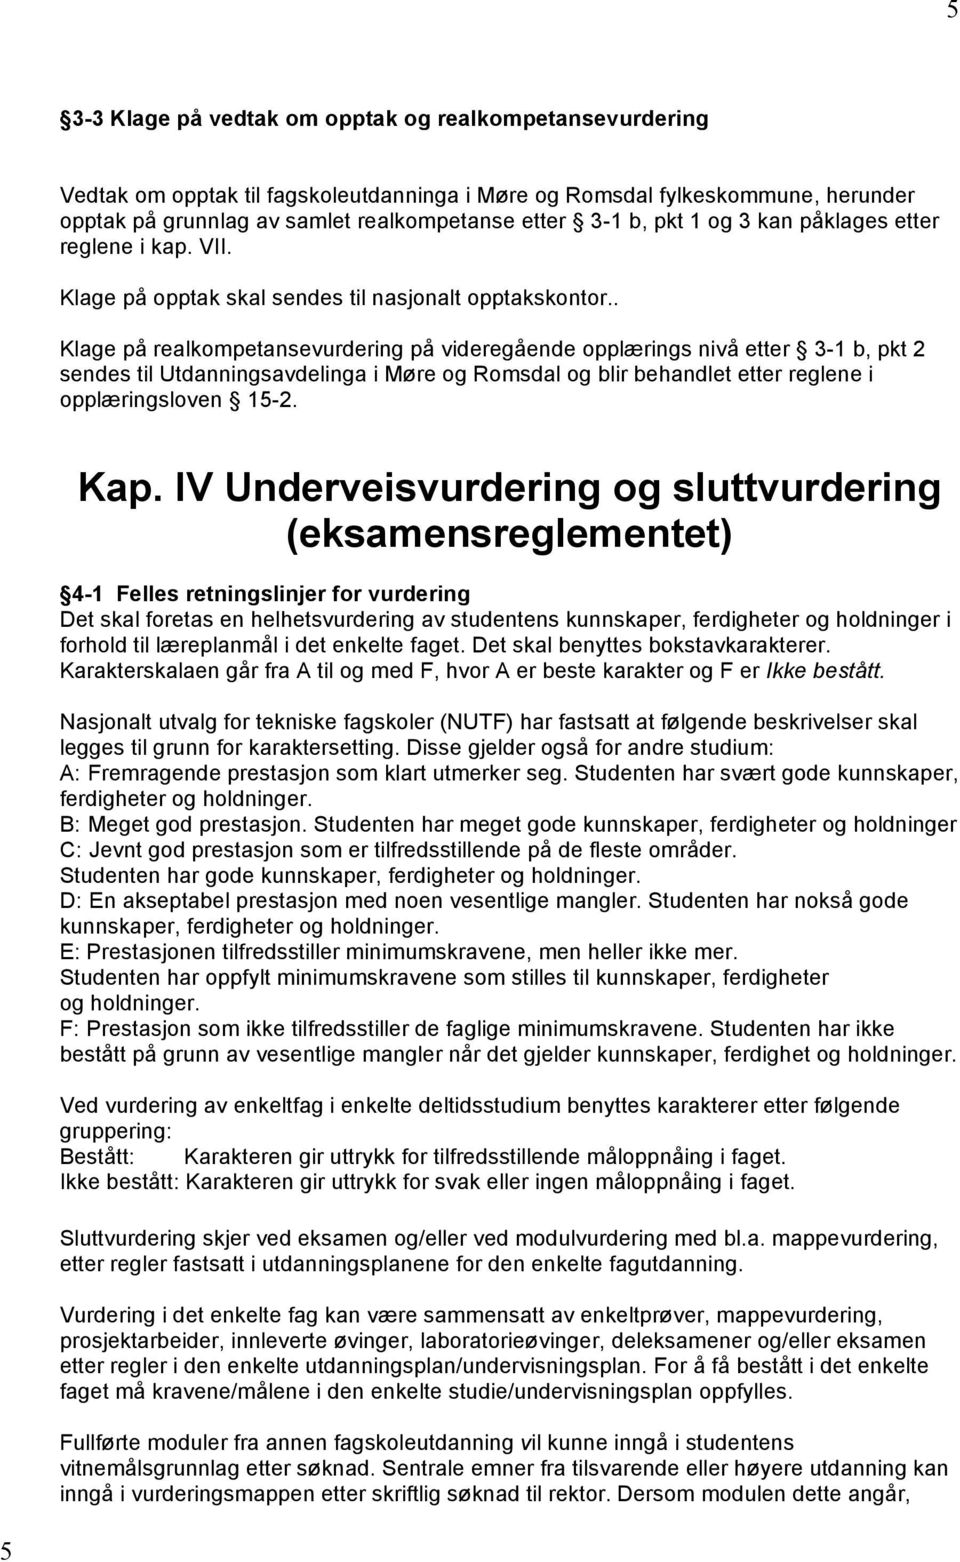 . Klage på realkompetansevurdering på videregående opplærings nivå etter 3-1 b, pkt 2 sendes til Utdanningsavdelinga i Møre og Romsdal og blir behandlet etter reglene i opplæringsloven 15-2. Kap.